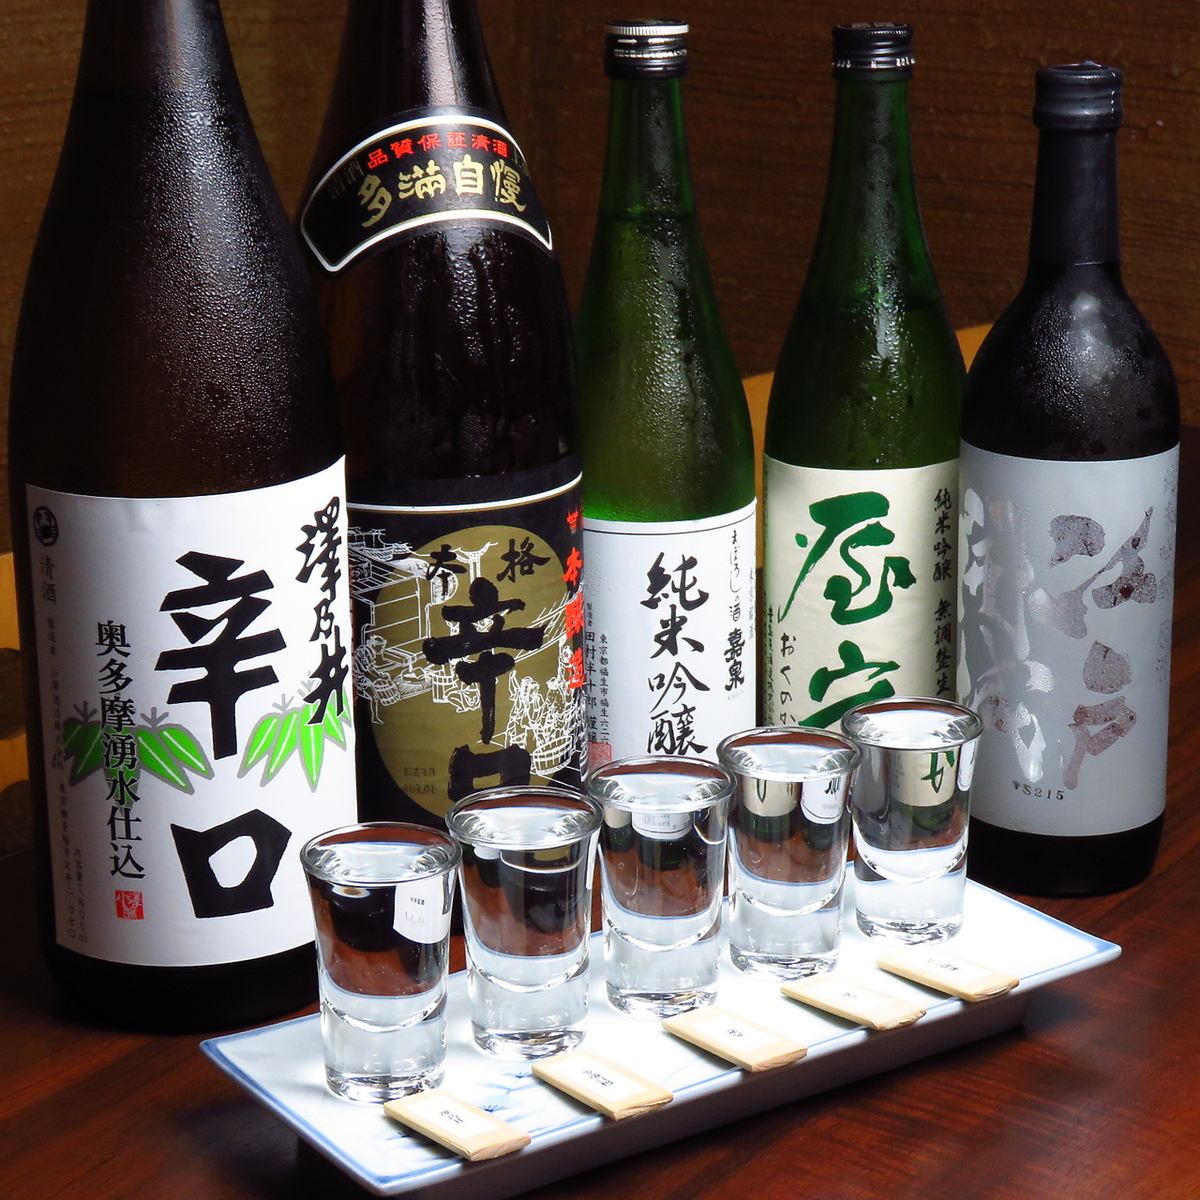 東京の日本酒を飲み比べできるセットがおすすめです。